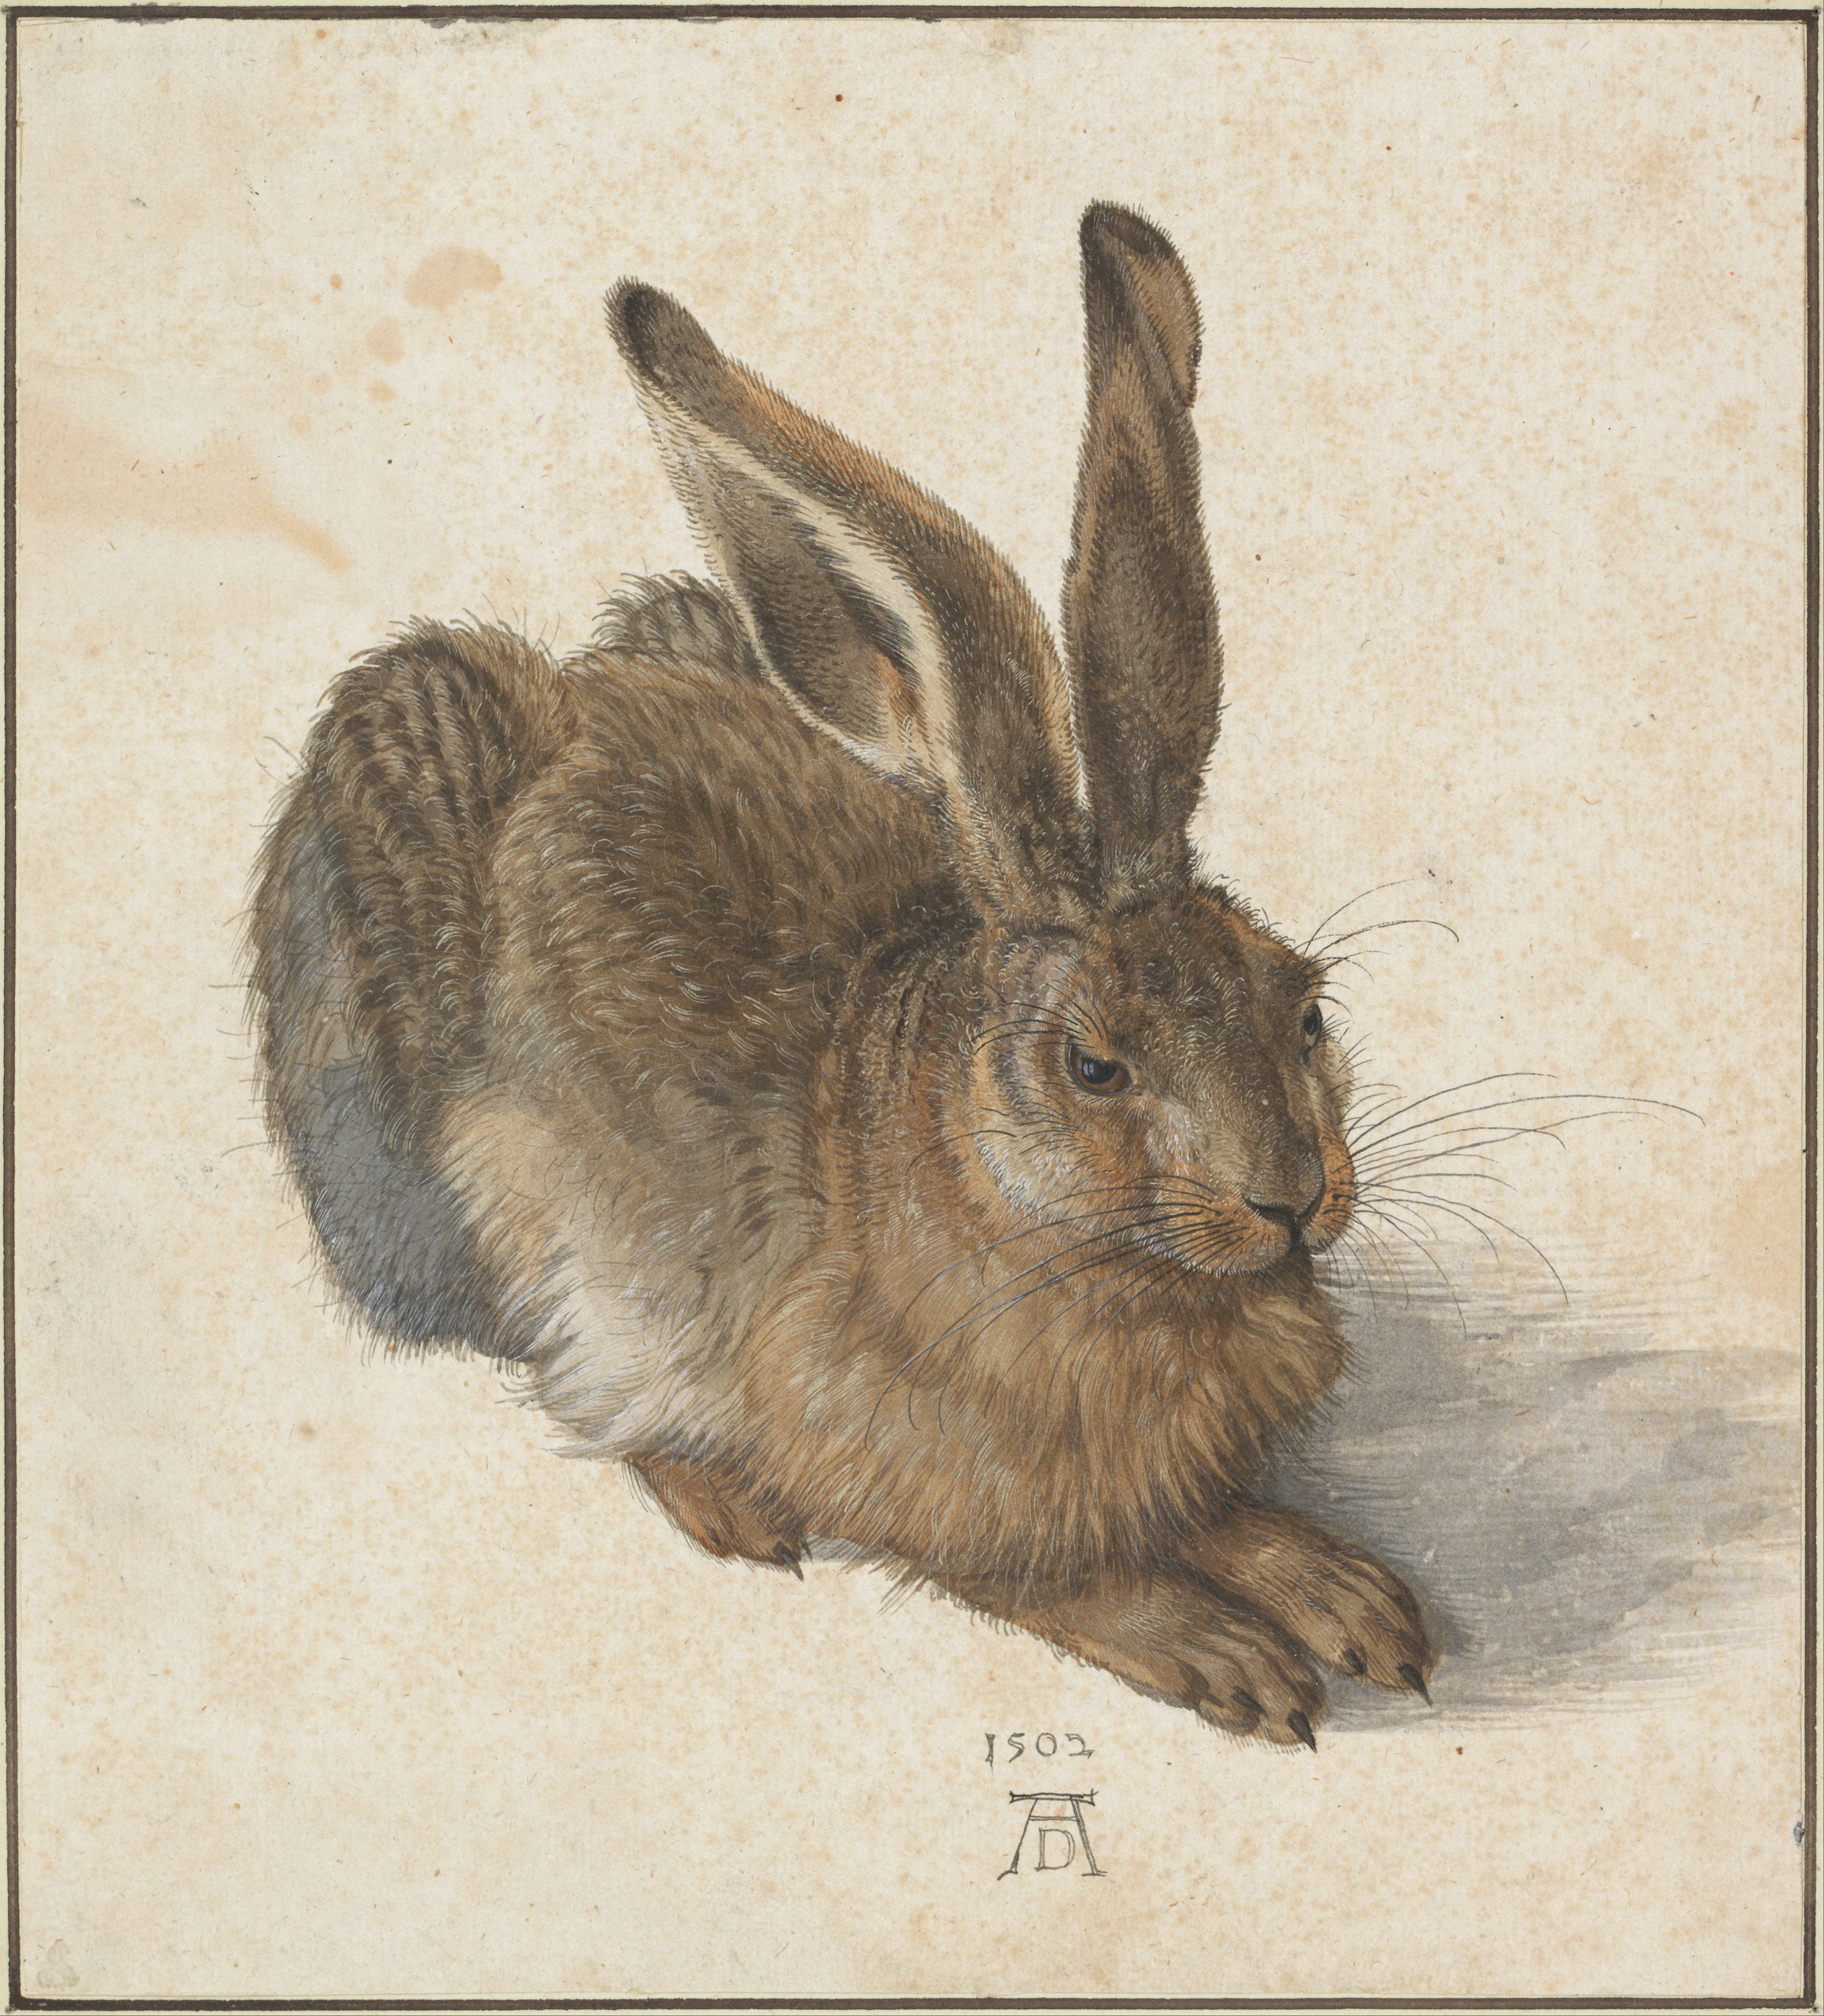 القواع by Albrecht Dürer - 1502 م - 25.1 في 22.6 سم 